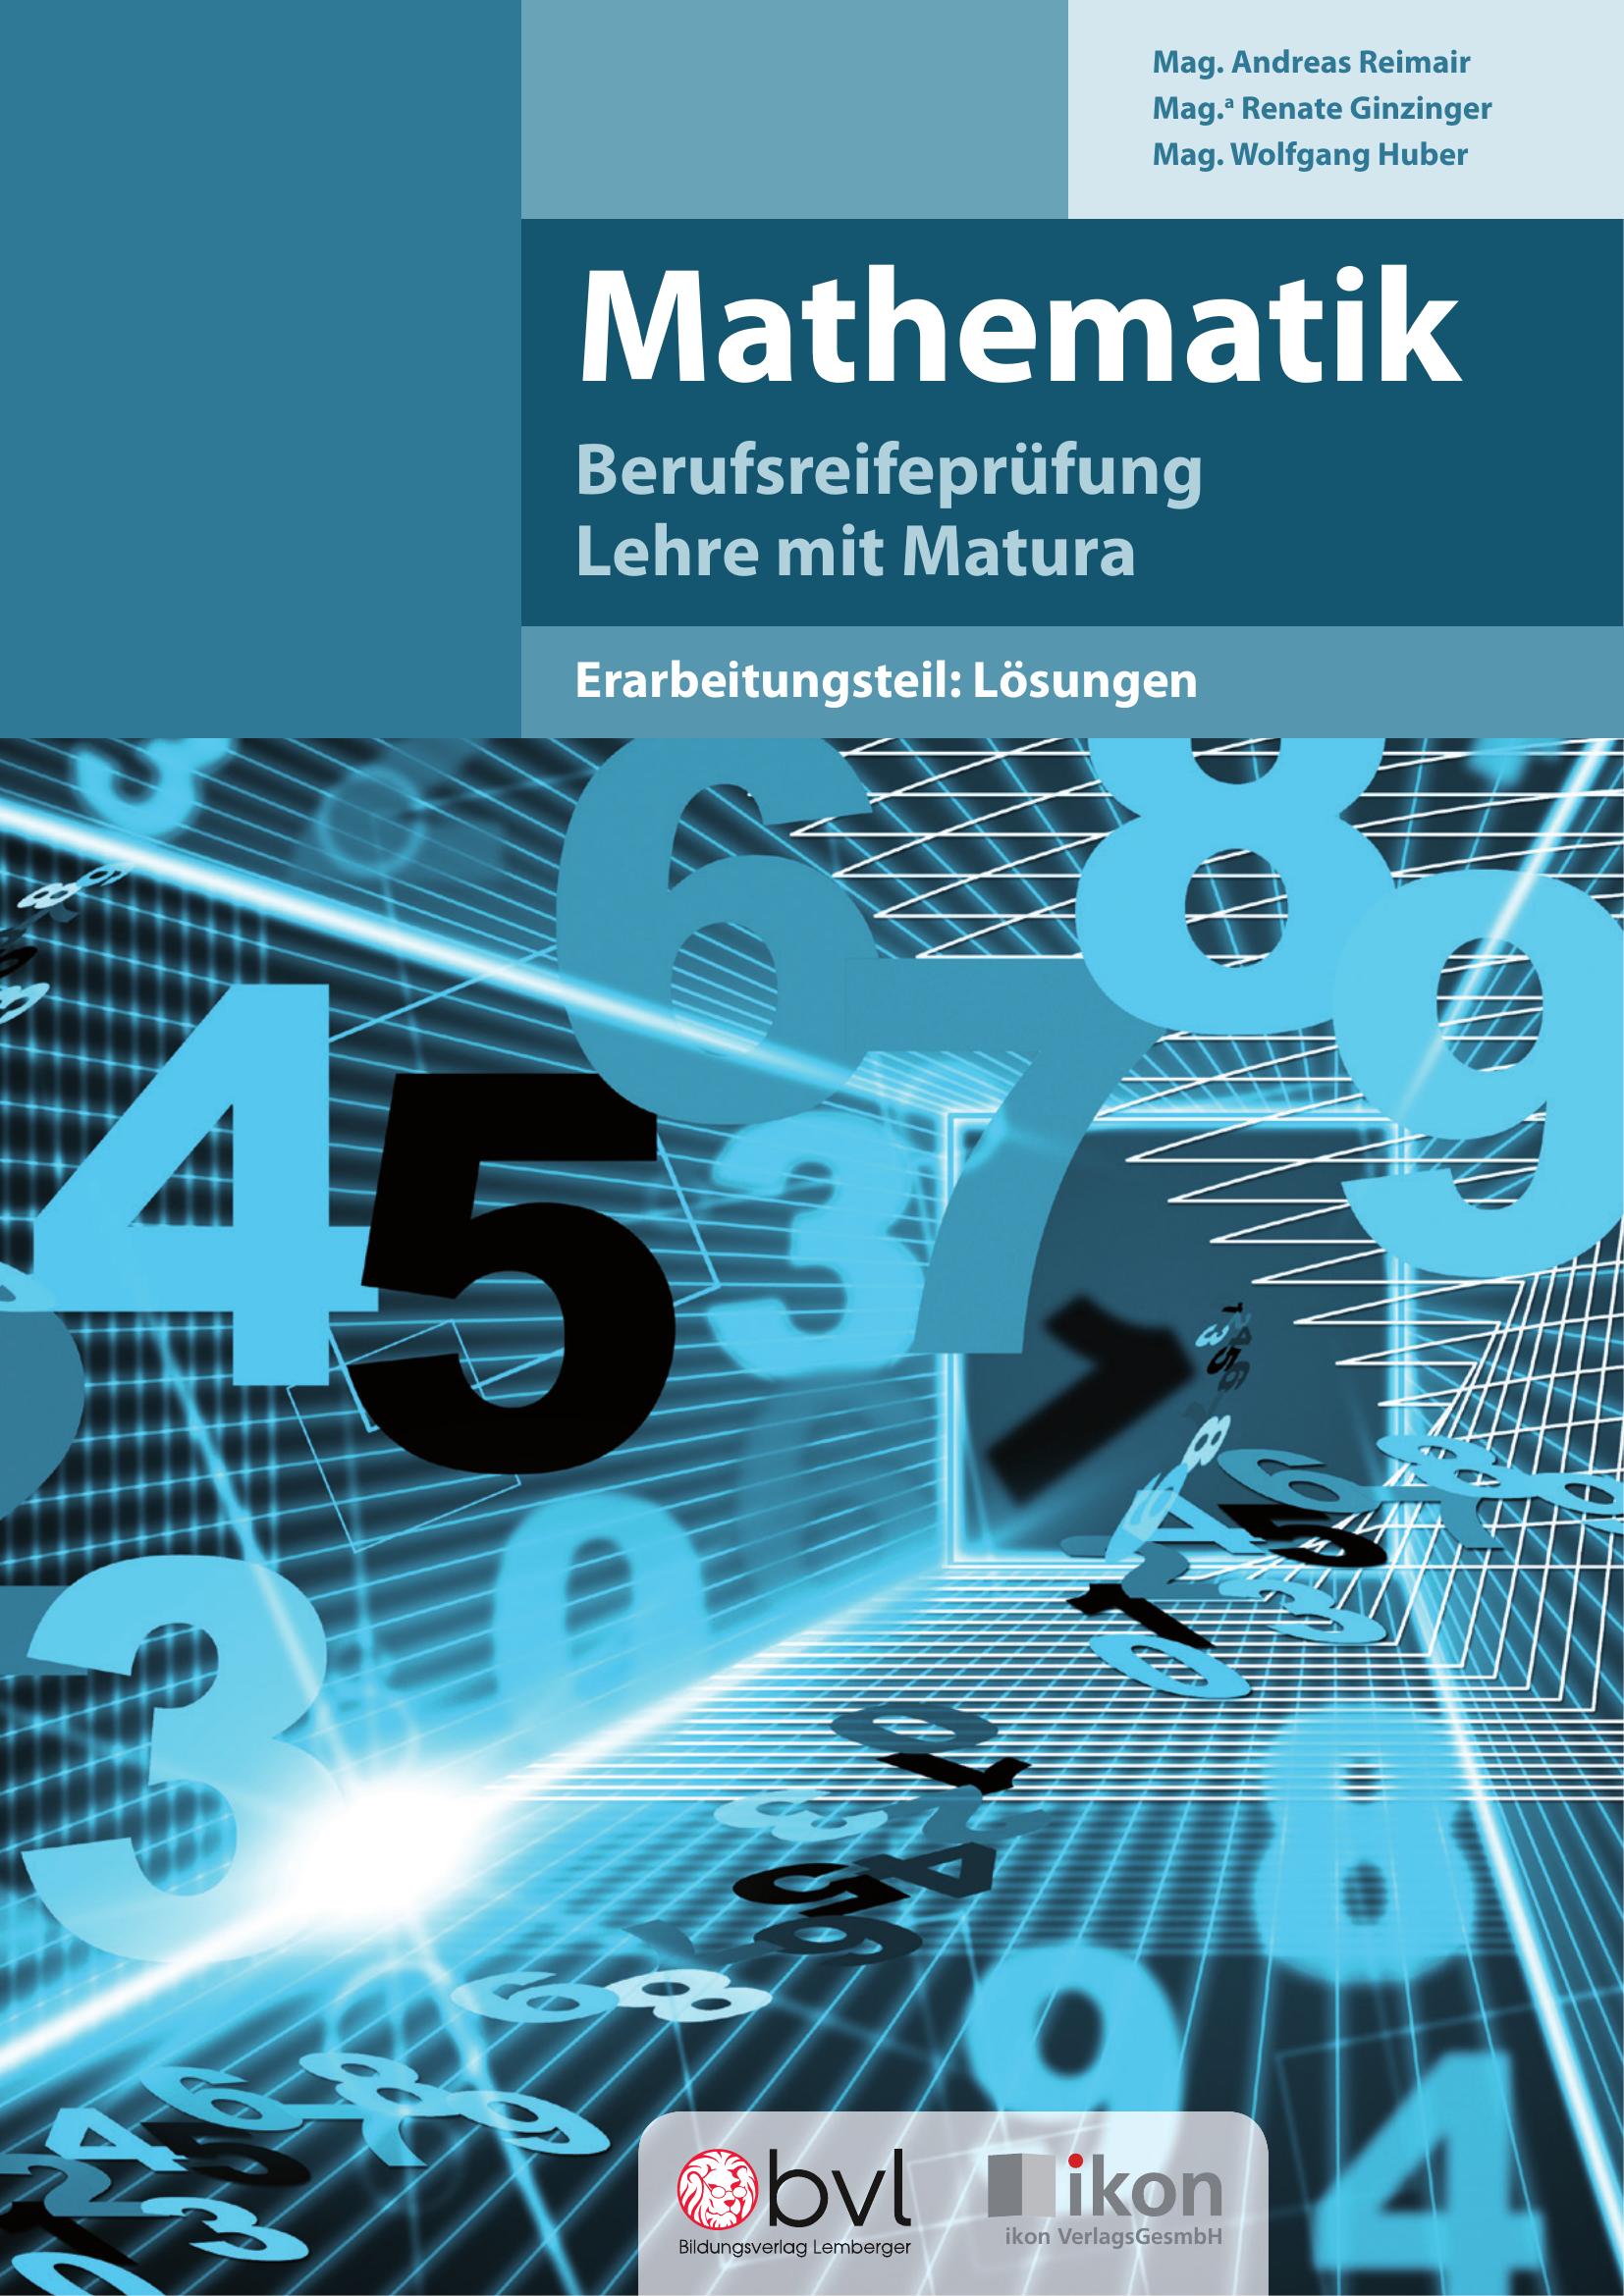 Berufsreifeprüfung Mathematik - Erarbeitungsteil: Lösungen